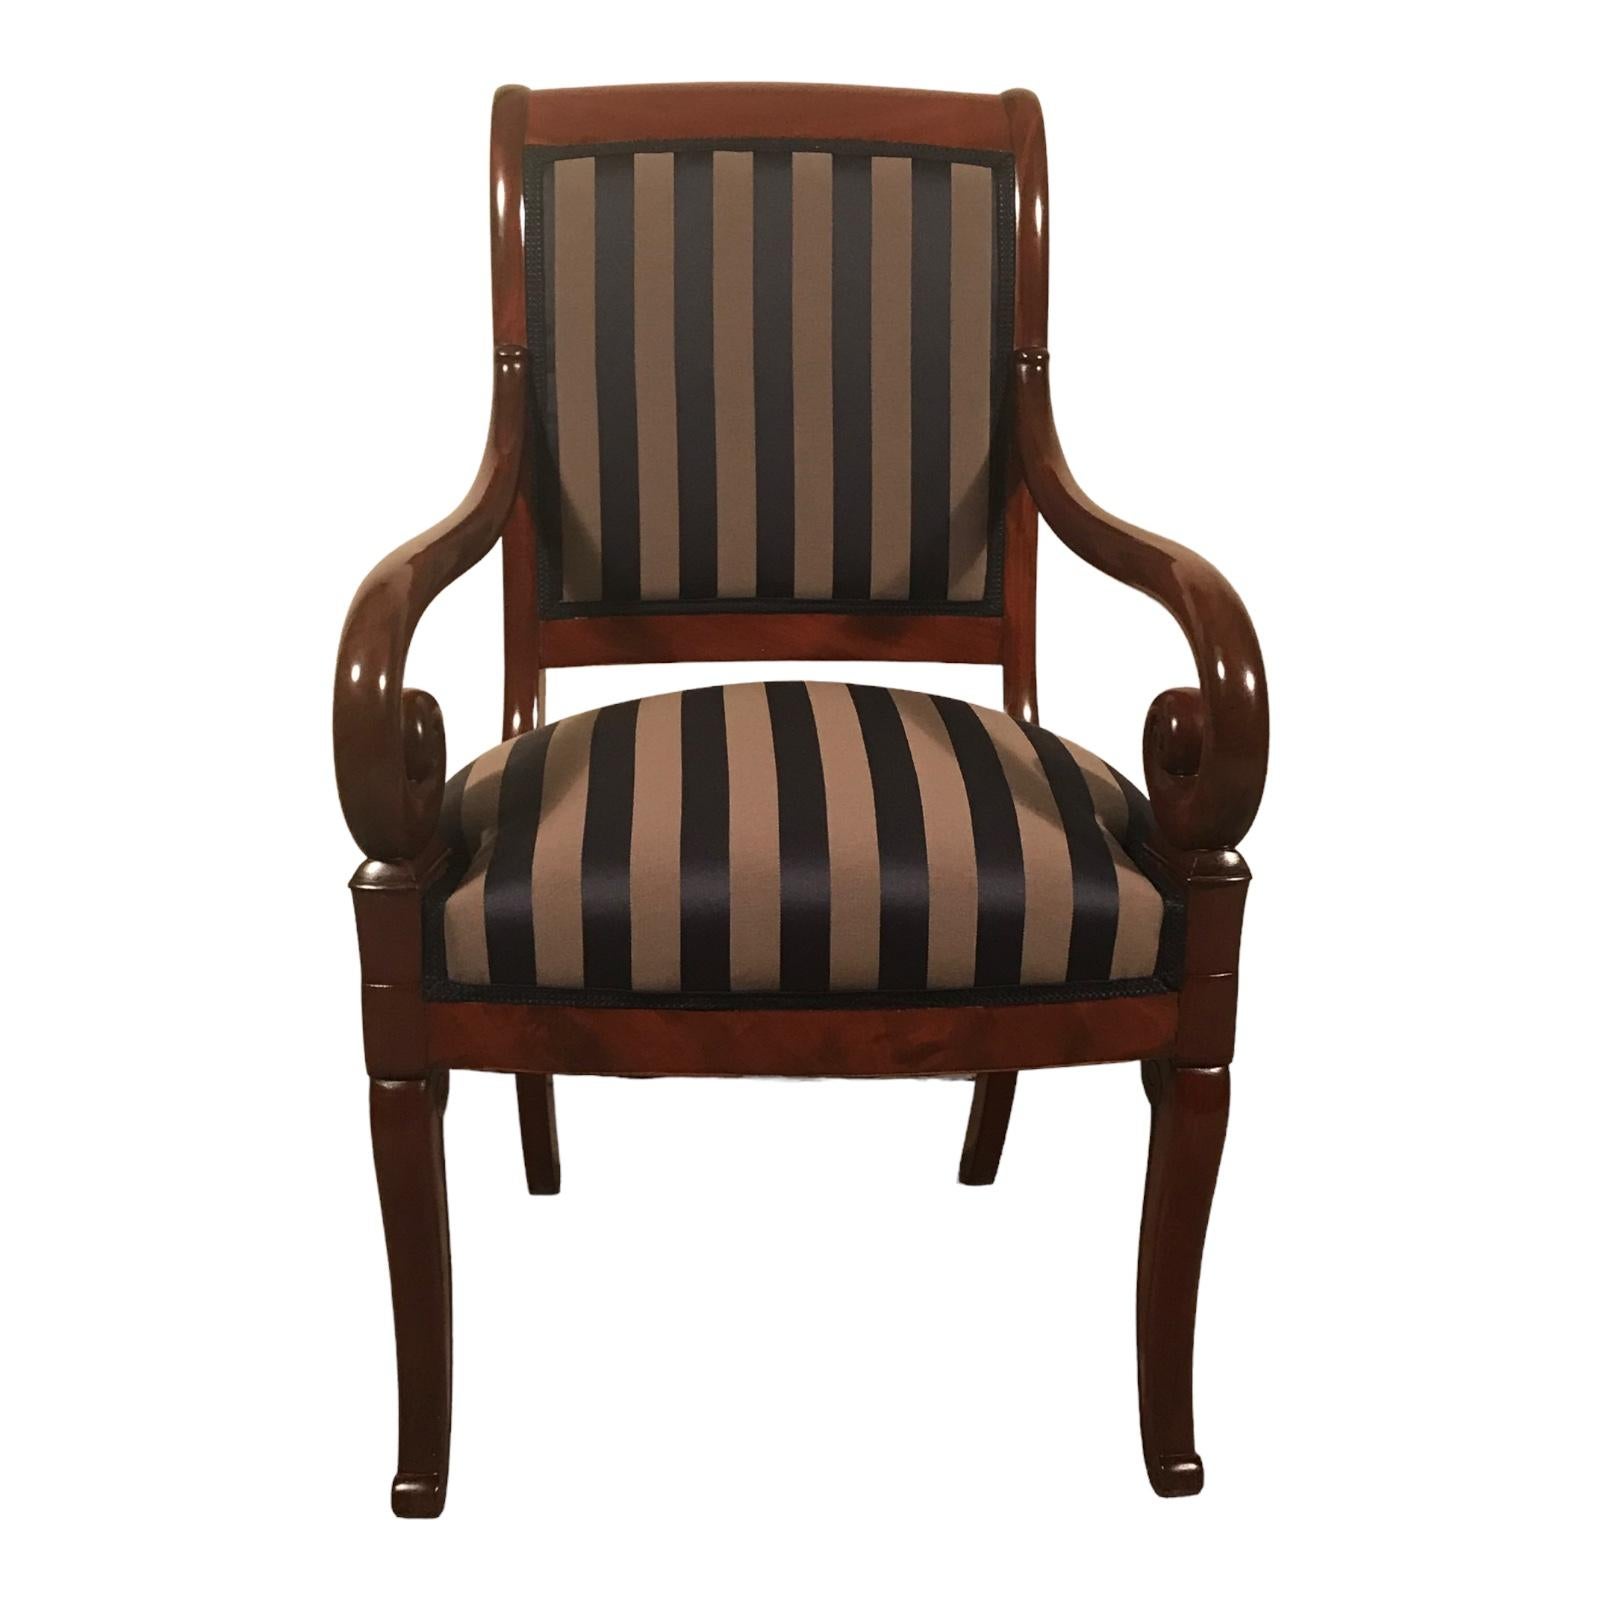 Paar französische Sessel des 19. Jahrhunderts, 1820-30
Dieses Paar französischer Sessel aus dem 19. Jahrhundert stammt aus den Jahren 1820-30 und wurde während der Restaurationszeit hergestellt. Die eleganten Stühle haben ein wunderschönes